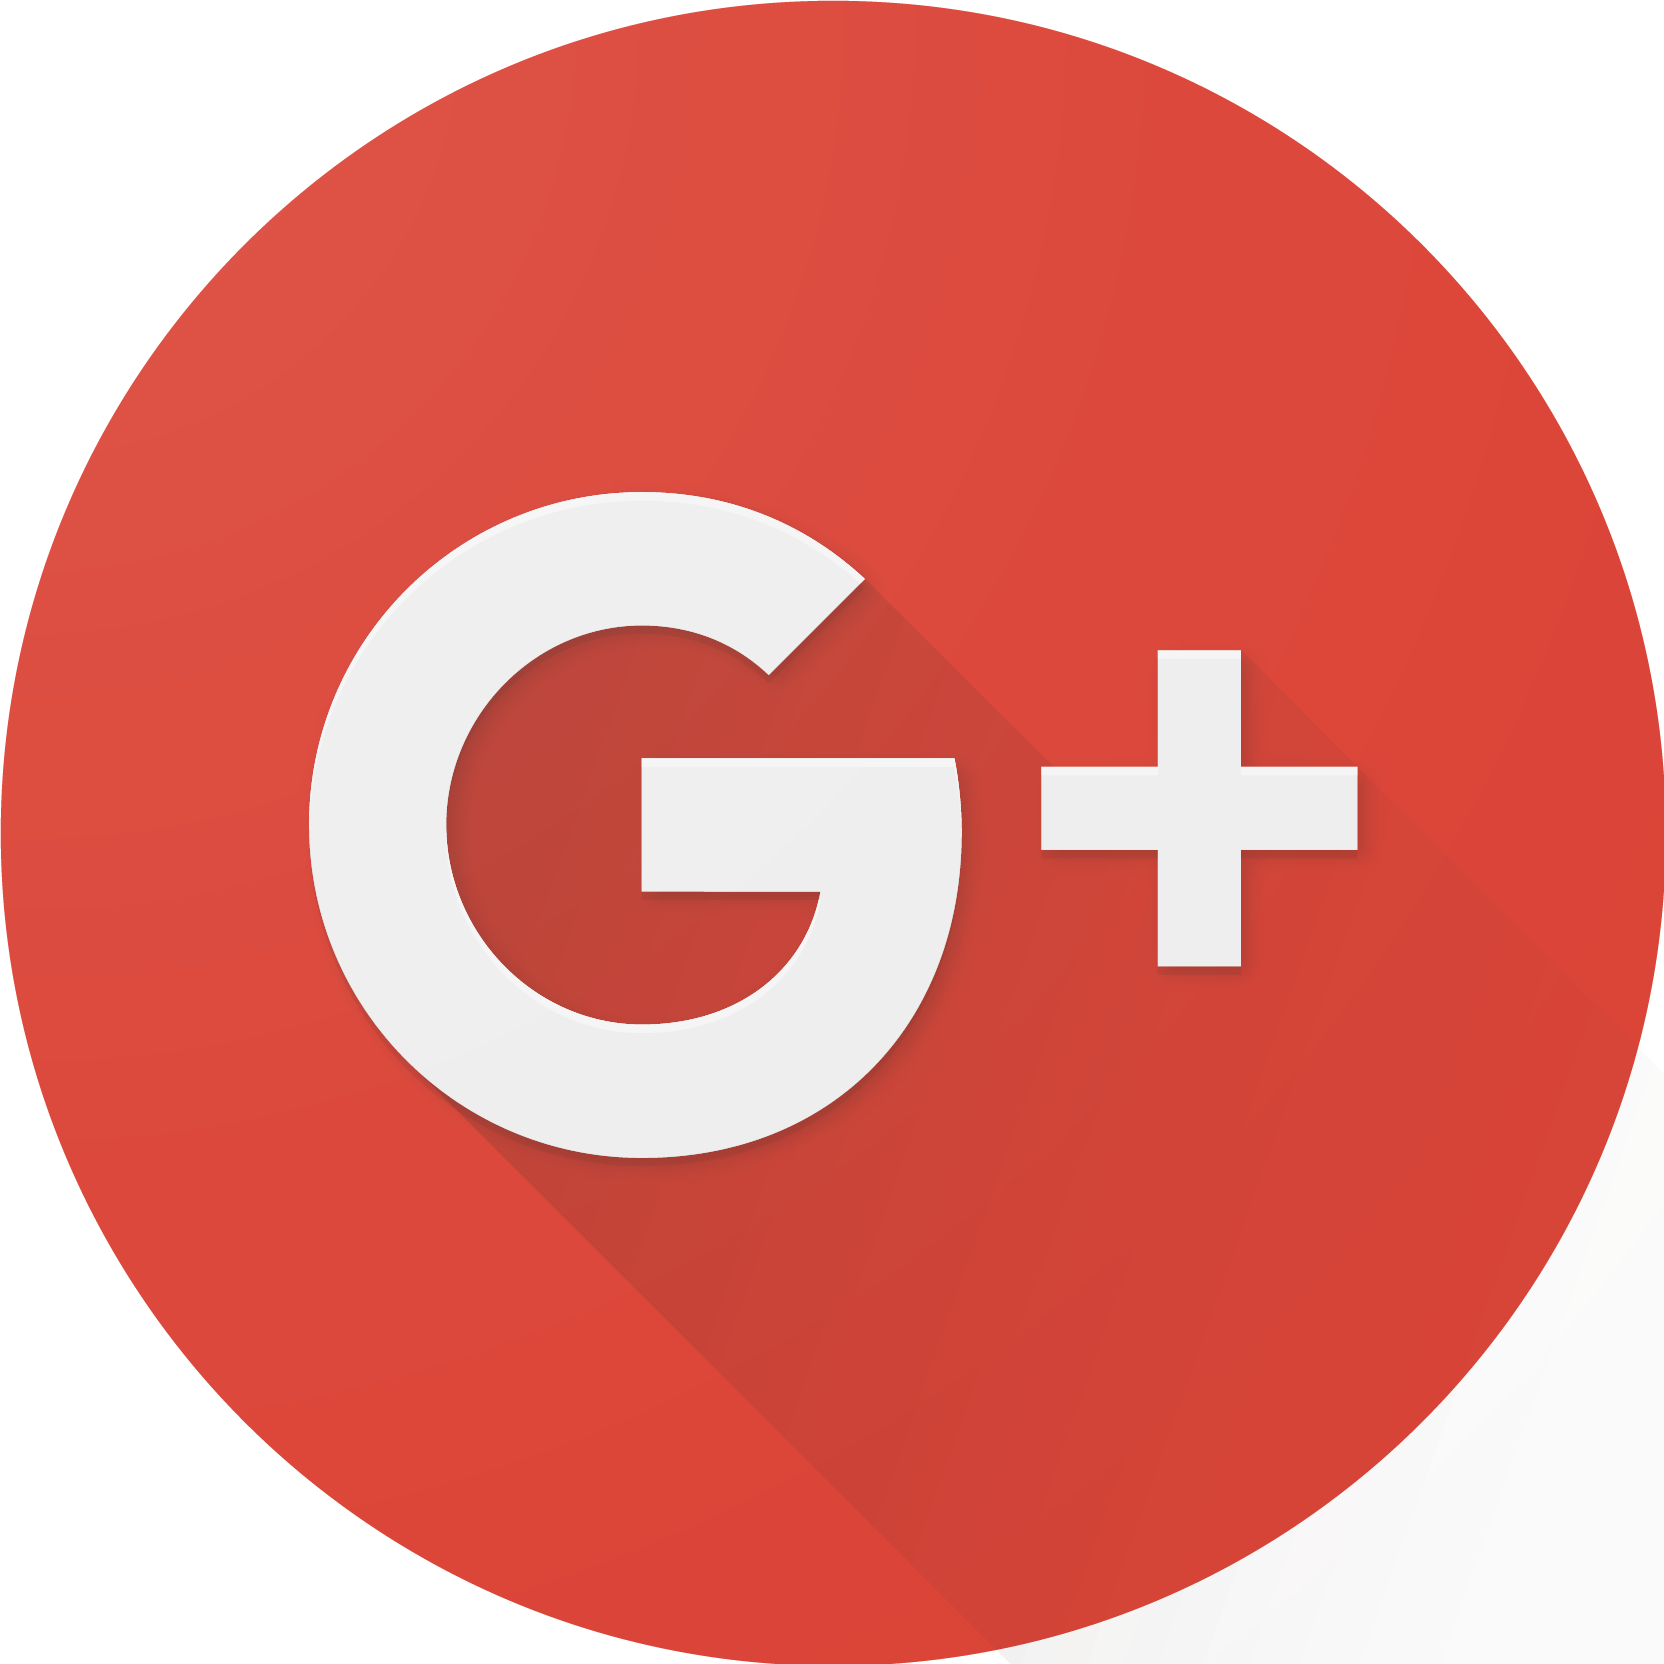 File:Google Plus logo.png